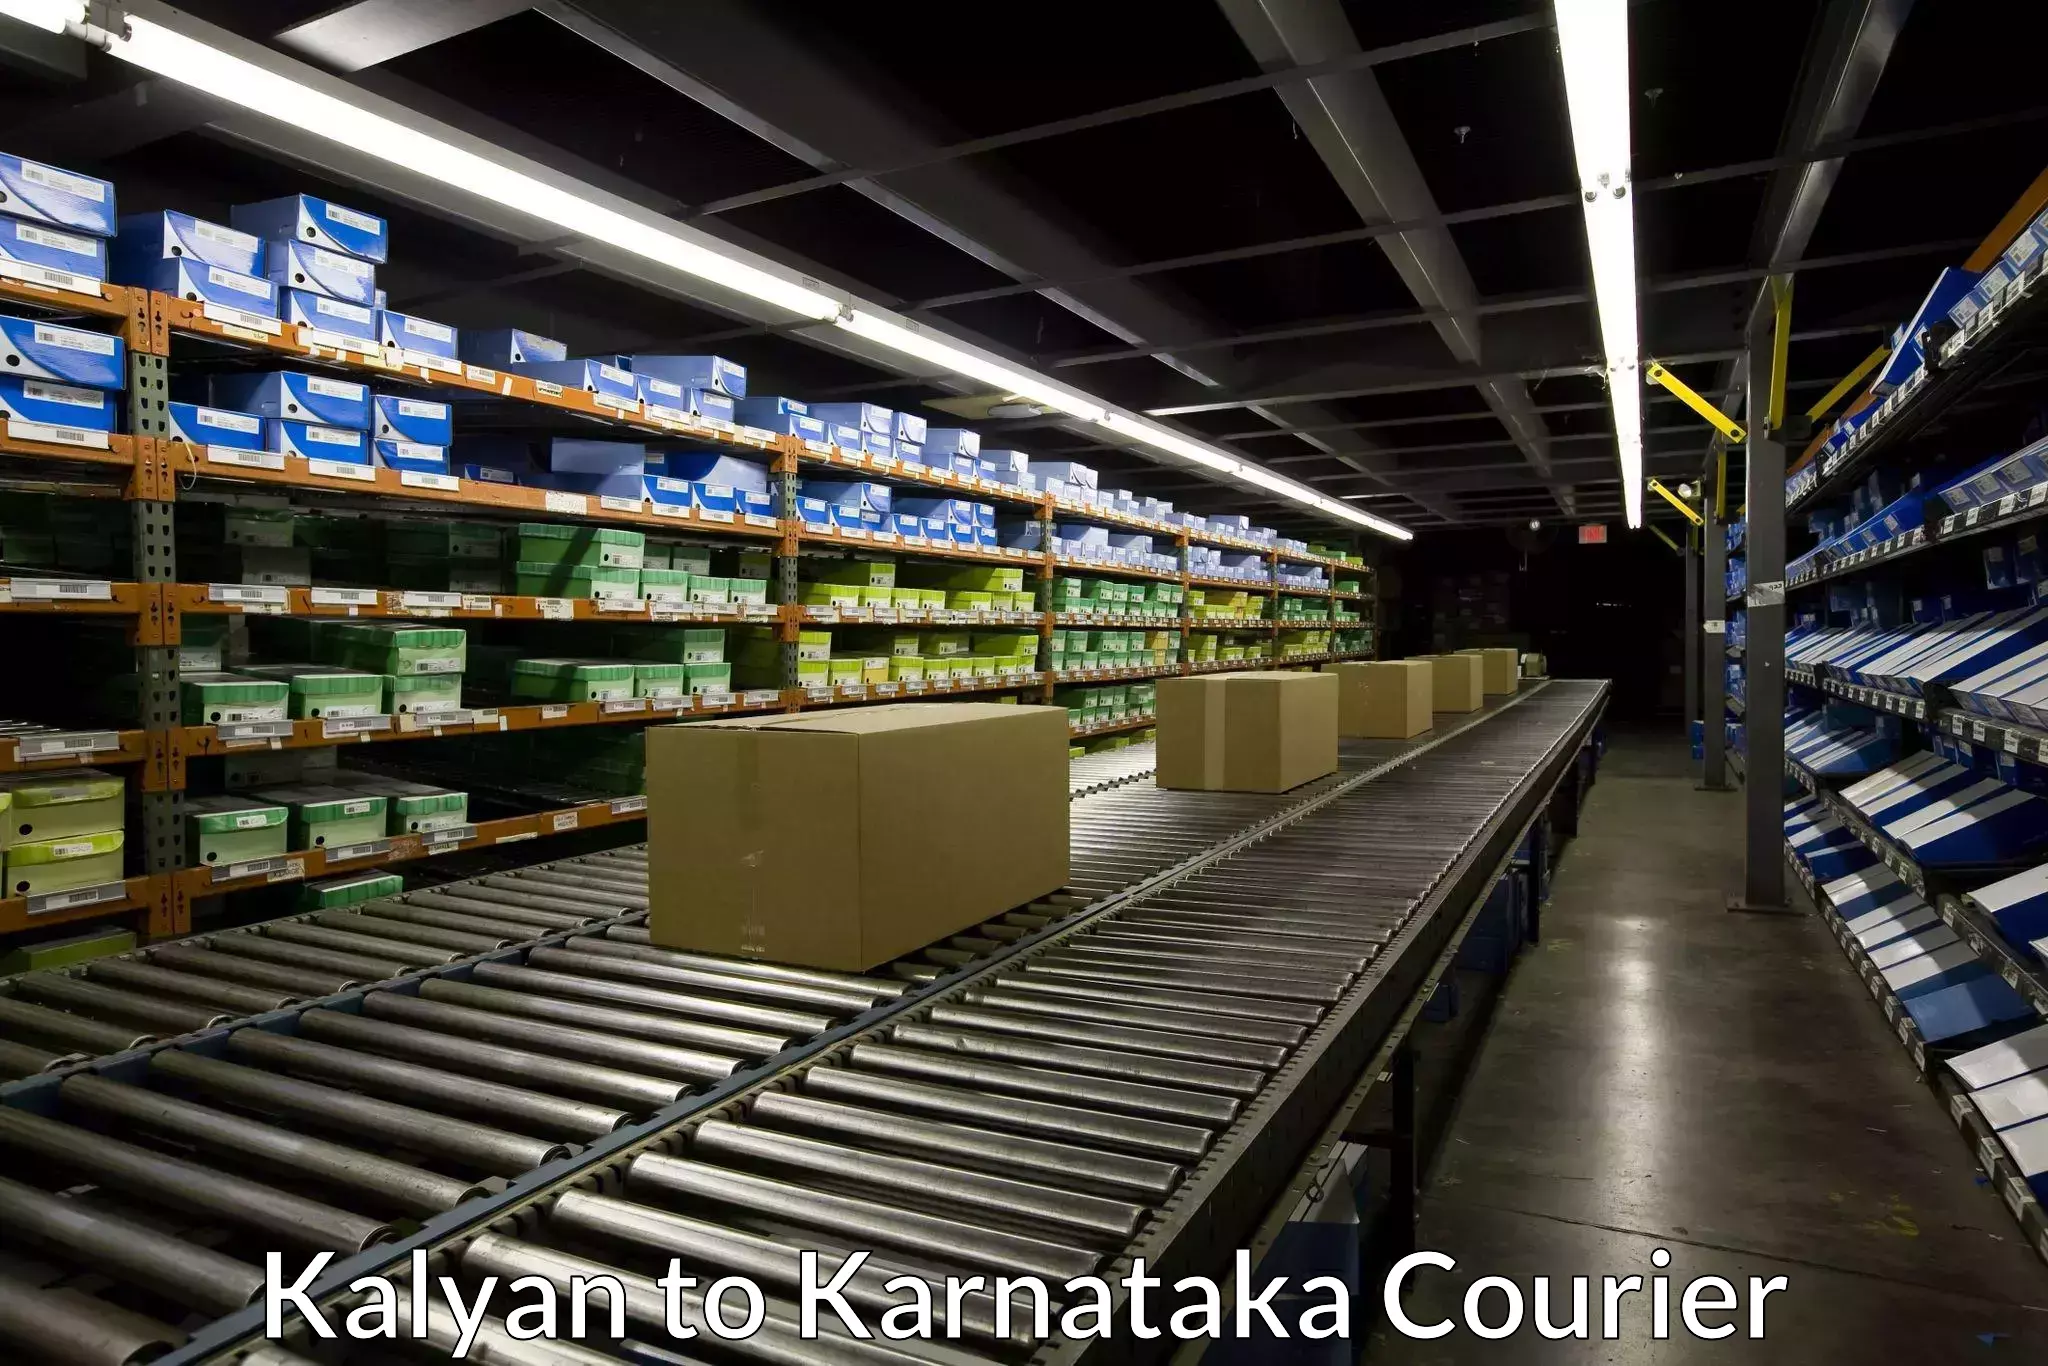 High-efficiency logistics in Kalyan to Karnataka